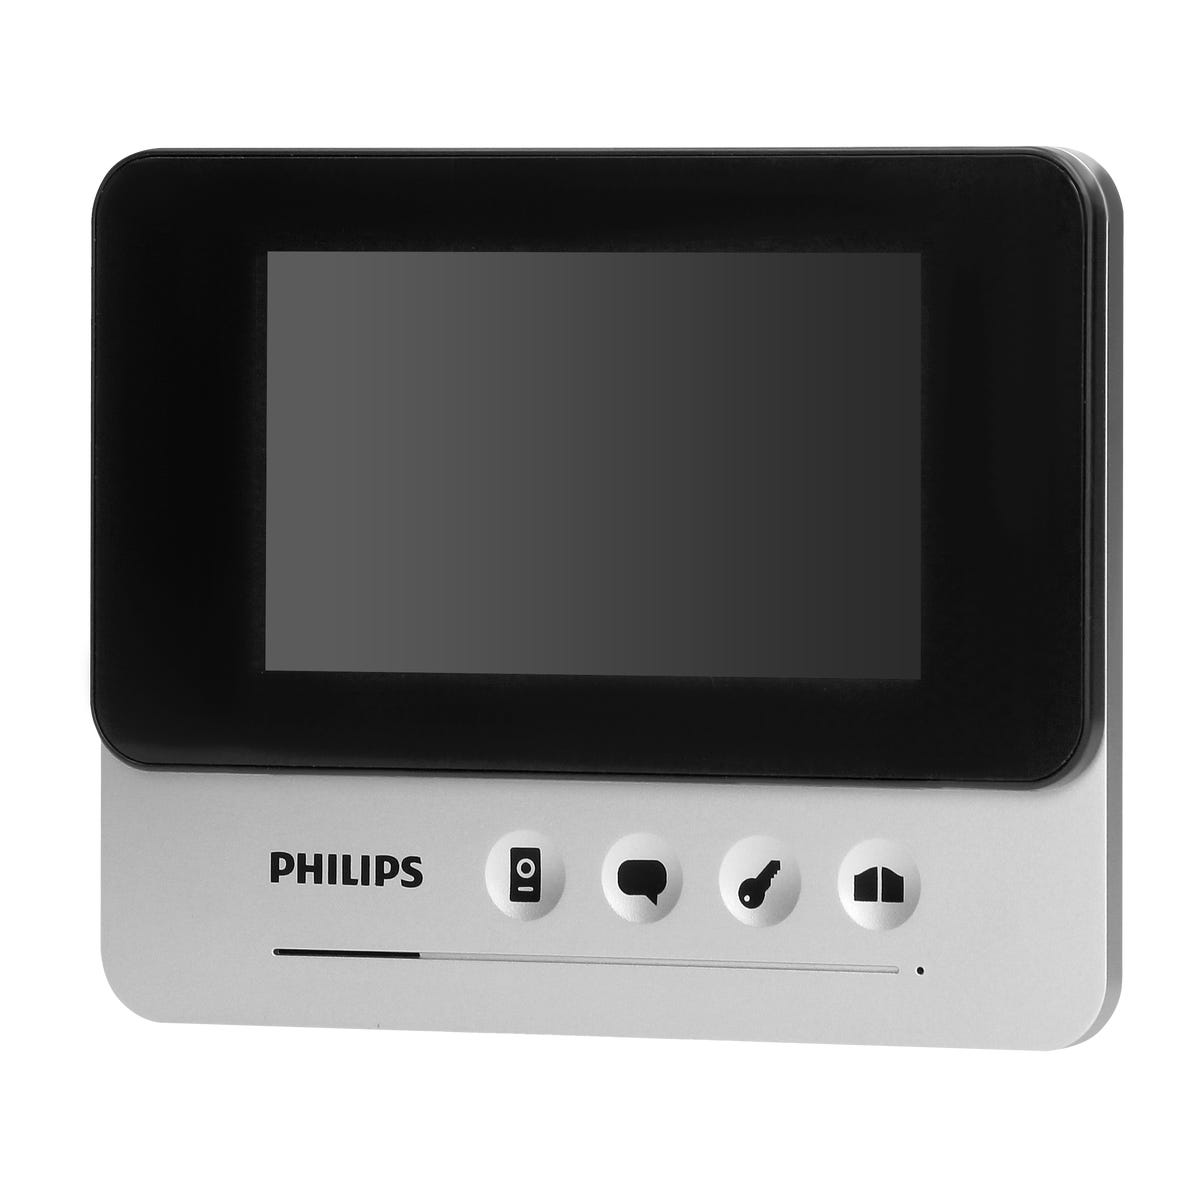 Zdjęcia - Pozostałe dla bezpieczeństwa Philips Dodatkowy ekran do wideodomofonu 4.3' WelcomeEye 